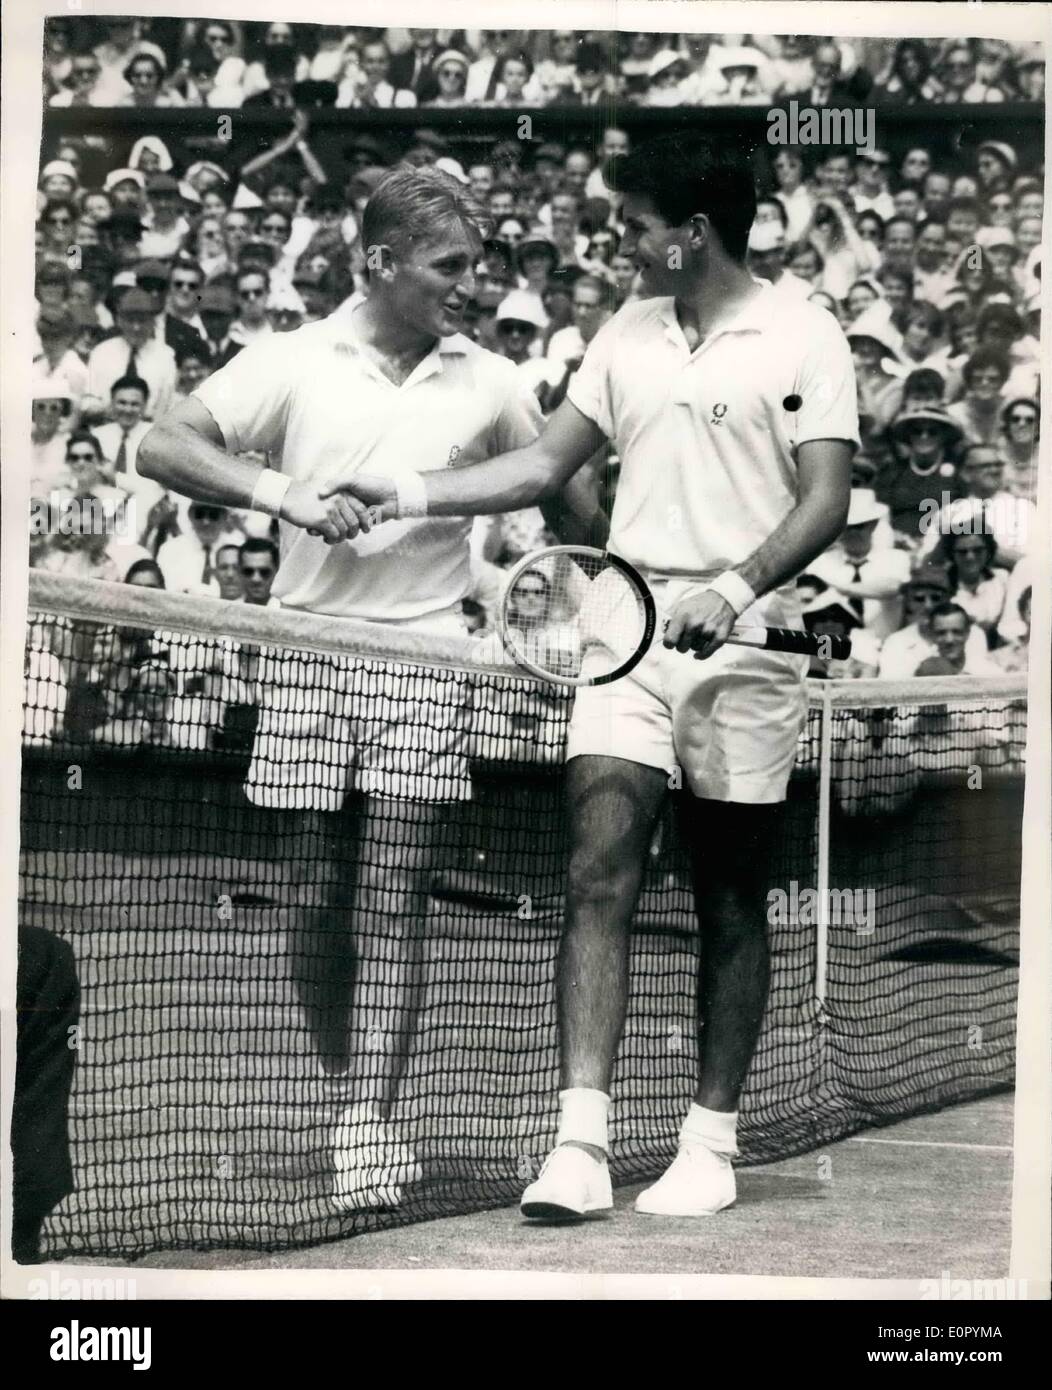 7. Juli 1957 - behält Lew Hoad seinen Titel nach einem Sieg über Ashely Cooper in der Männern Singles Endrunde an Wimbledon. Foto zeigt Led Stockfoto